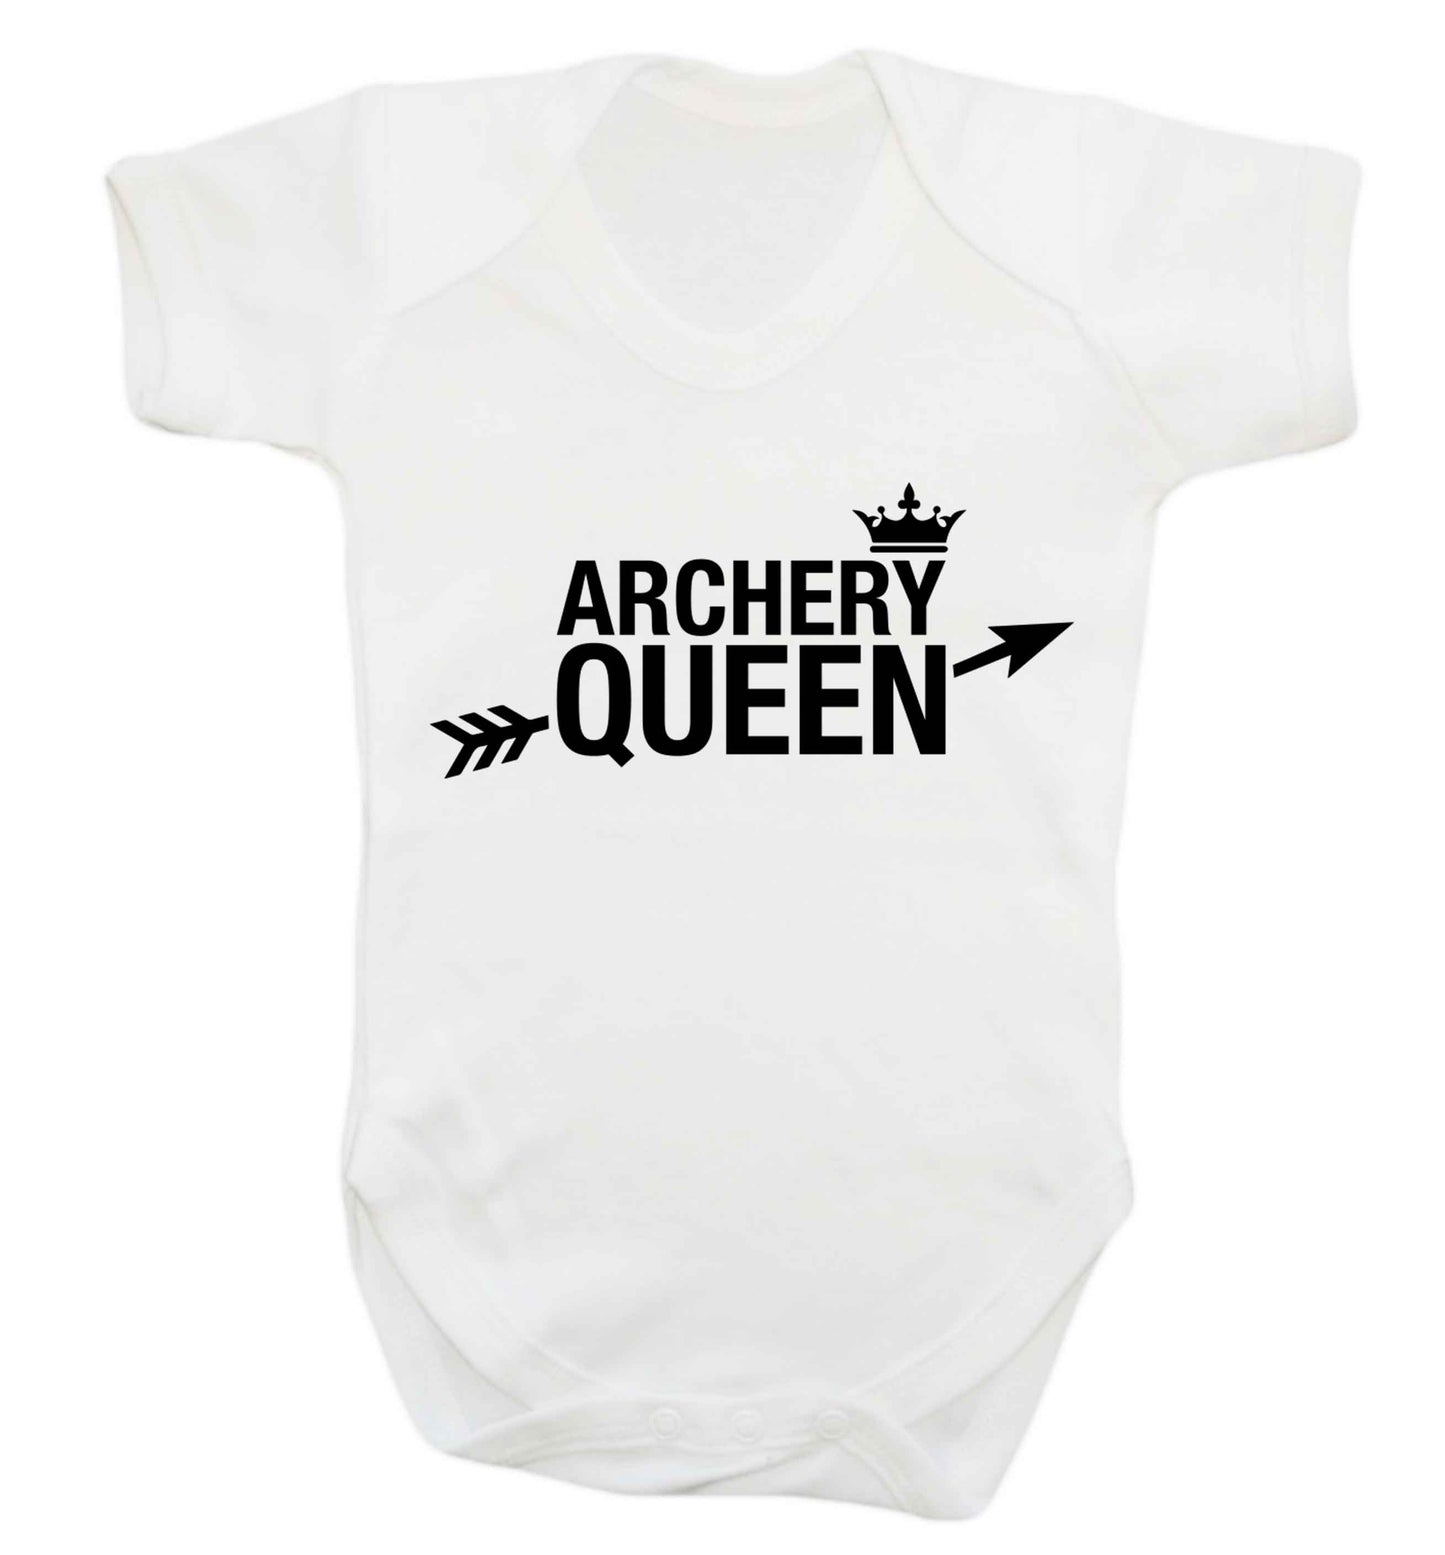 Archery queen Baby Vest white 18-24 months